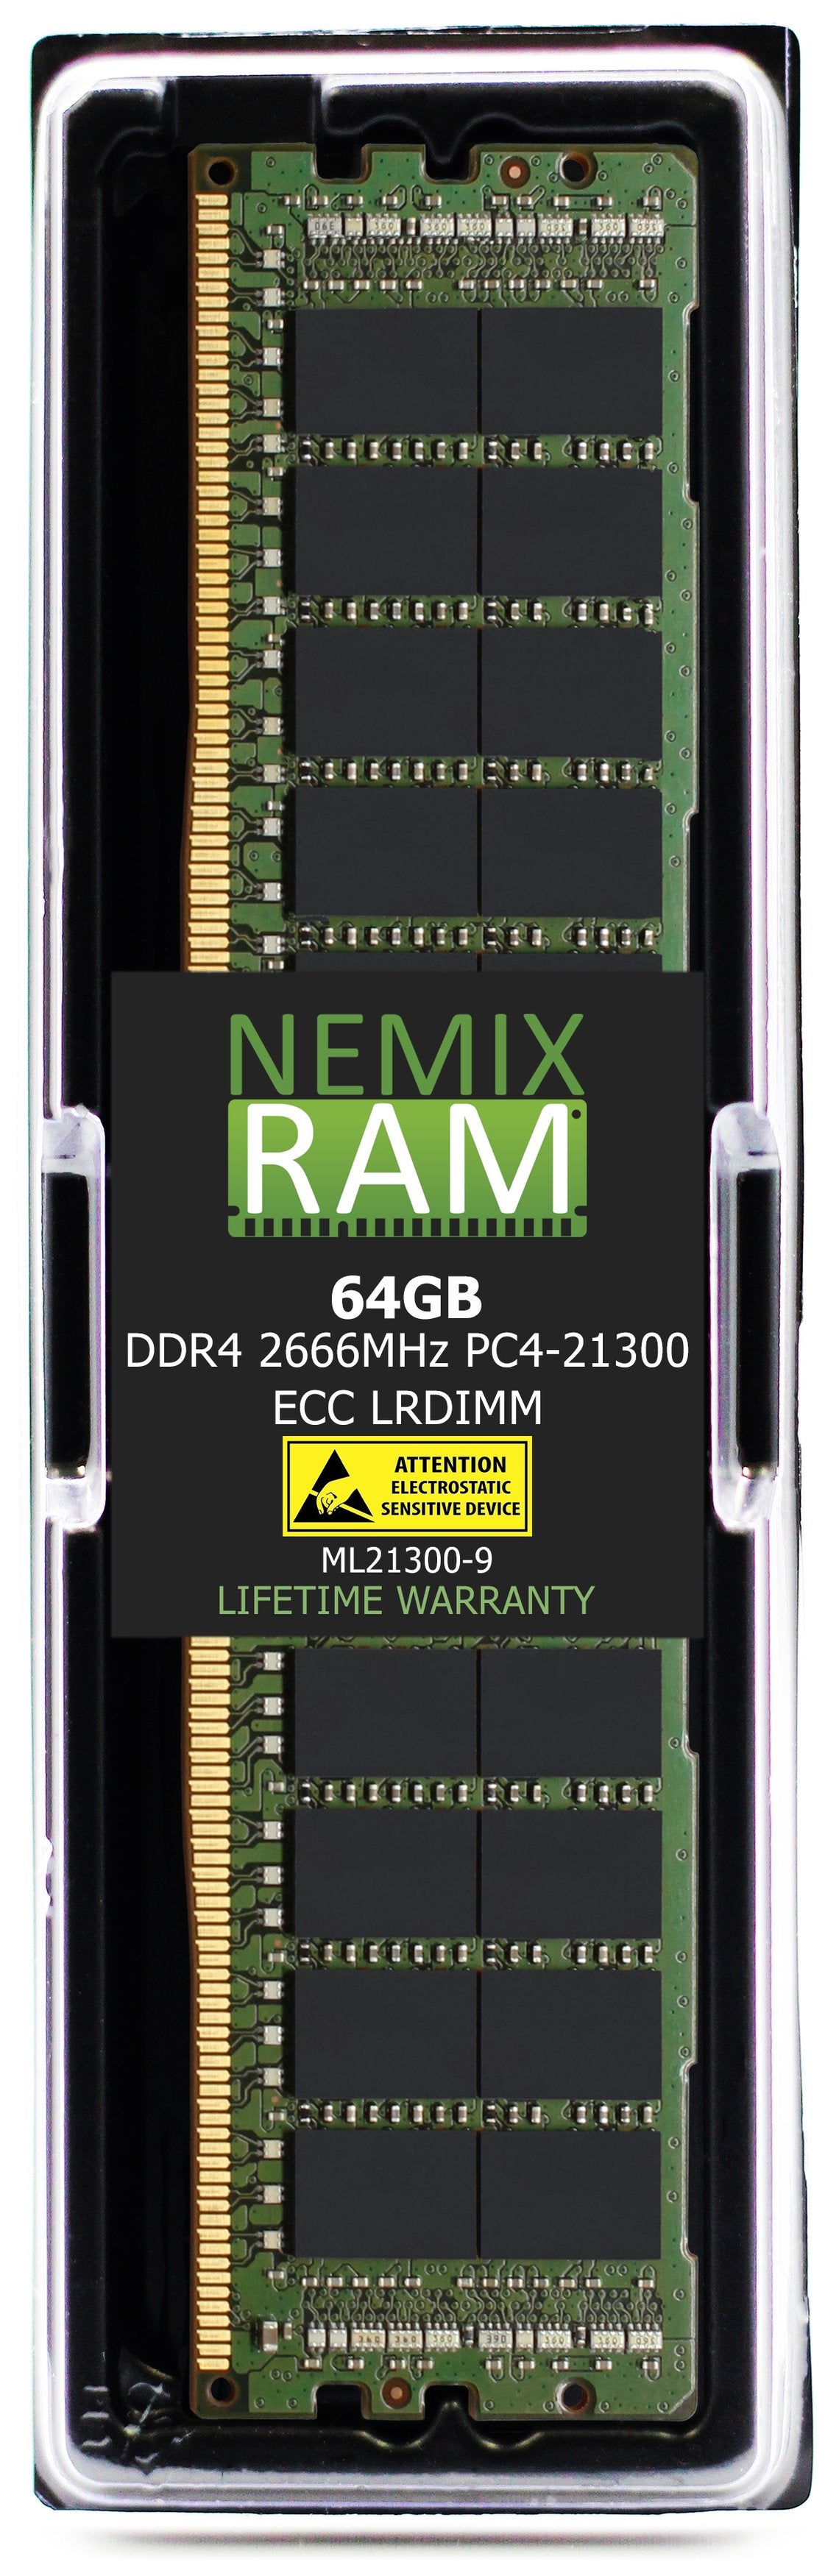 64GB DDR4 2666MHZ PC4-21300 LRDIMM Compatible with Supermicro MEM-DR464L-SL04-LR26